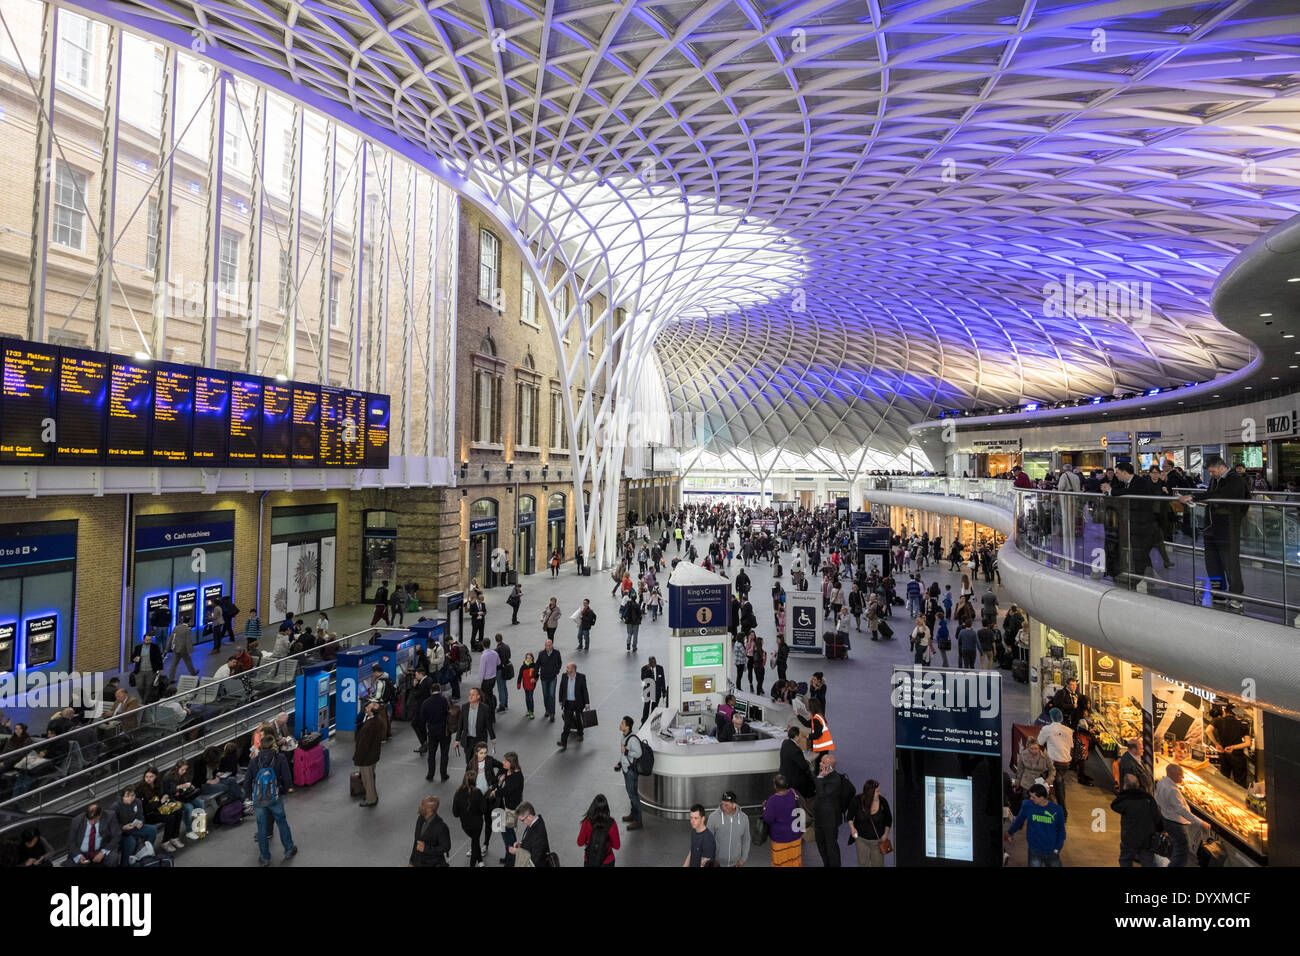 Nouvelle architecture moderne de l'ouest de la gare de King's Cross gare à Londres Royaume-Uni Banque D'Images